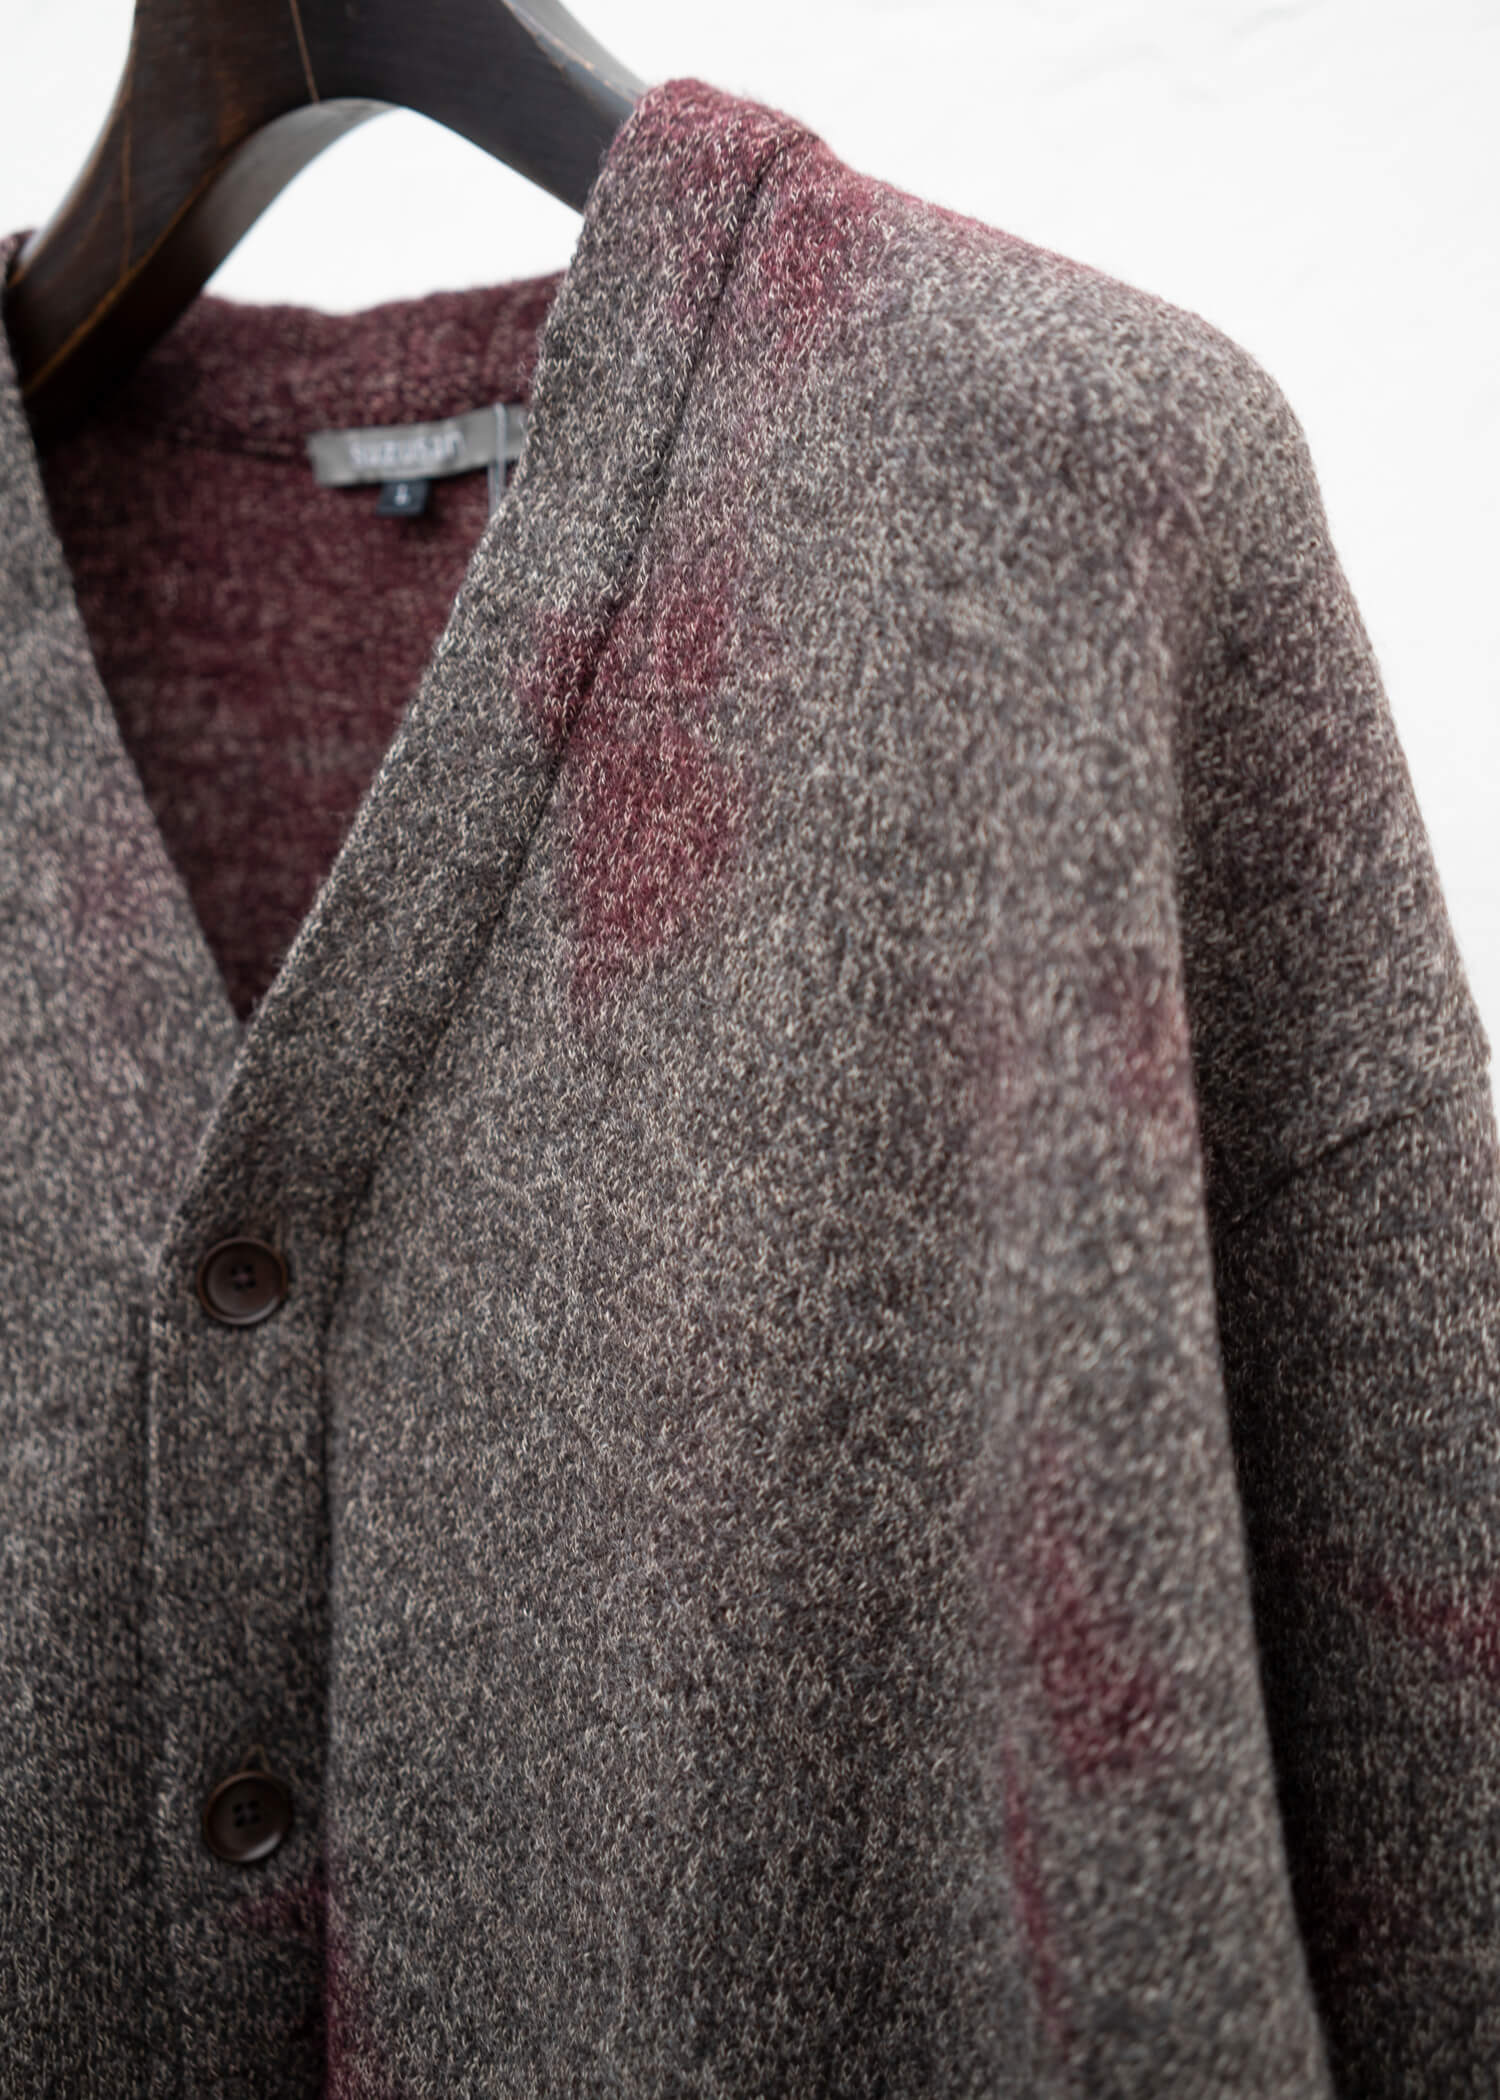 SUZUSAN Wool Cotton Jersey Cardi gan(Madara Shibori) Crimson - Muddy Brown